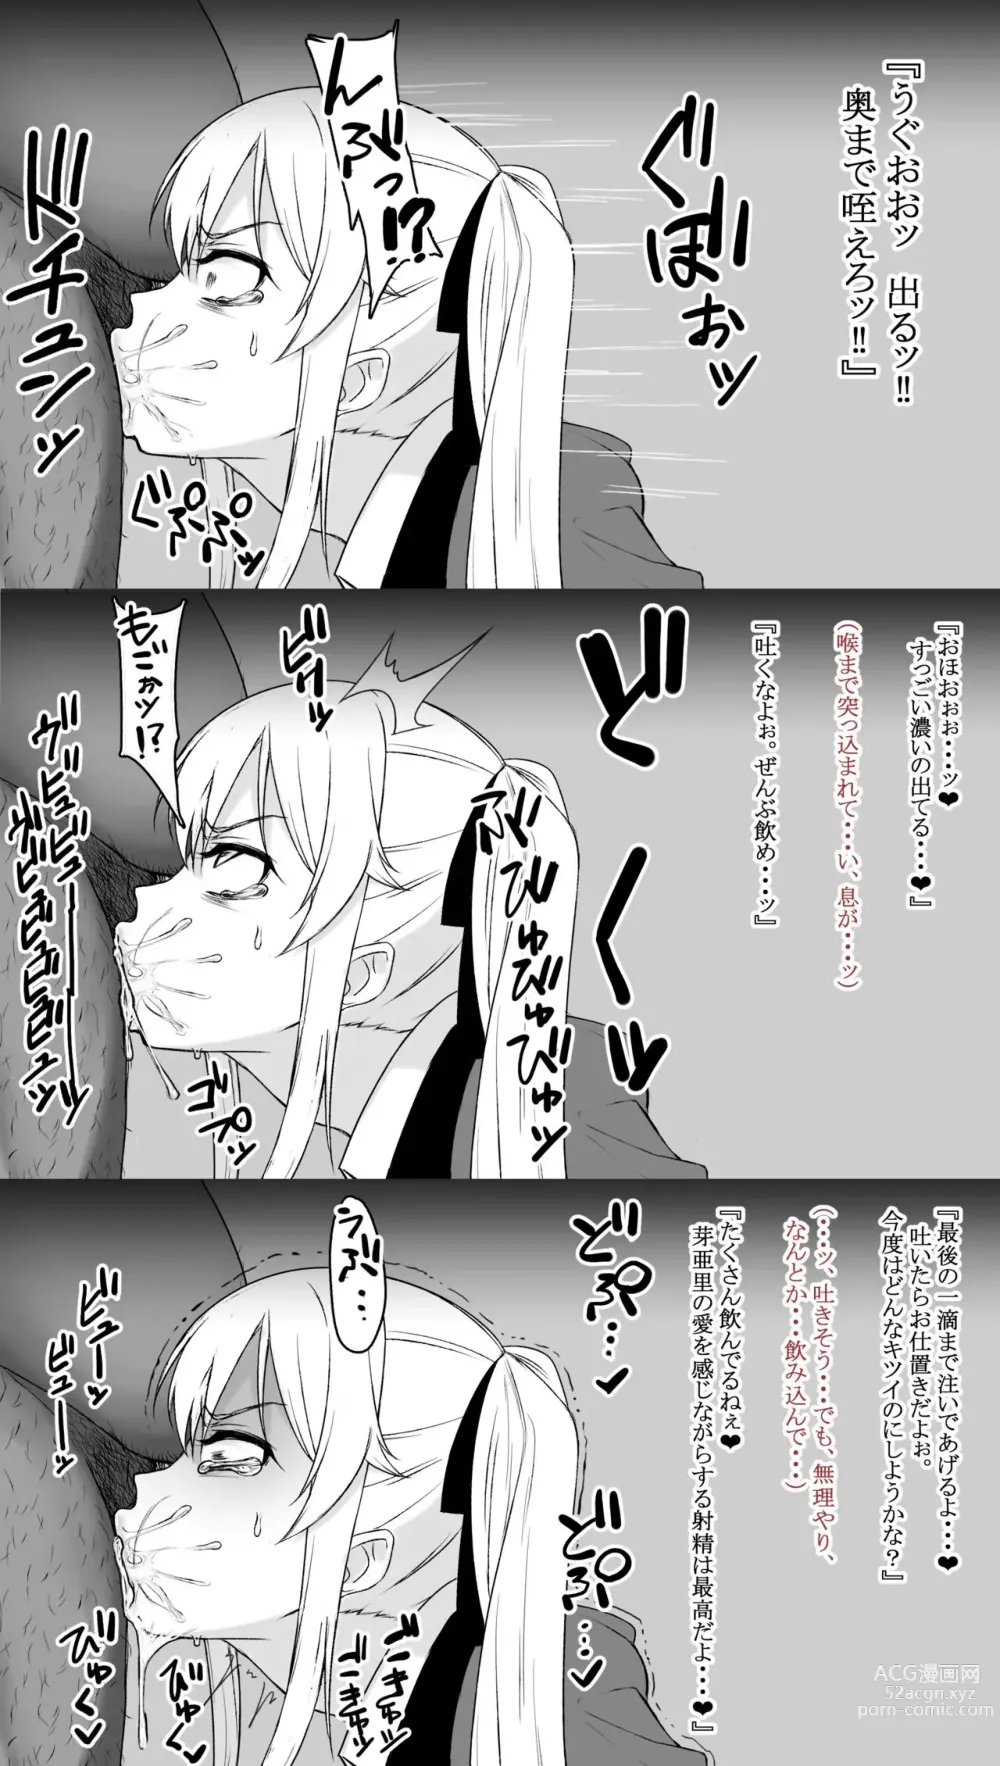 Page 3 of doujinshi Saotome me A sato, Kimo otoko konyakusha ni hōshi